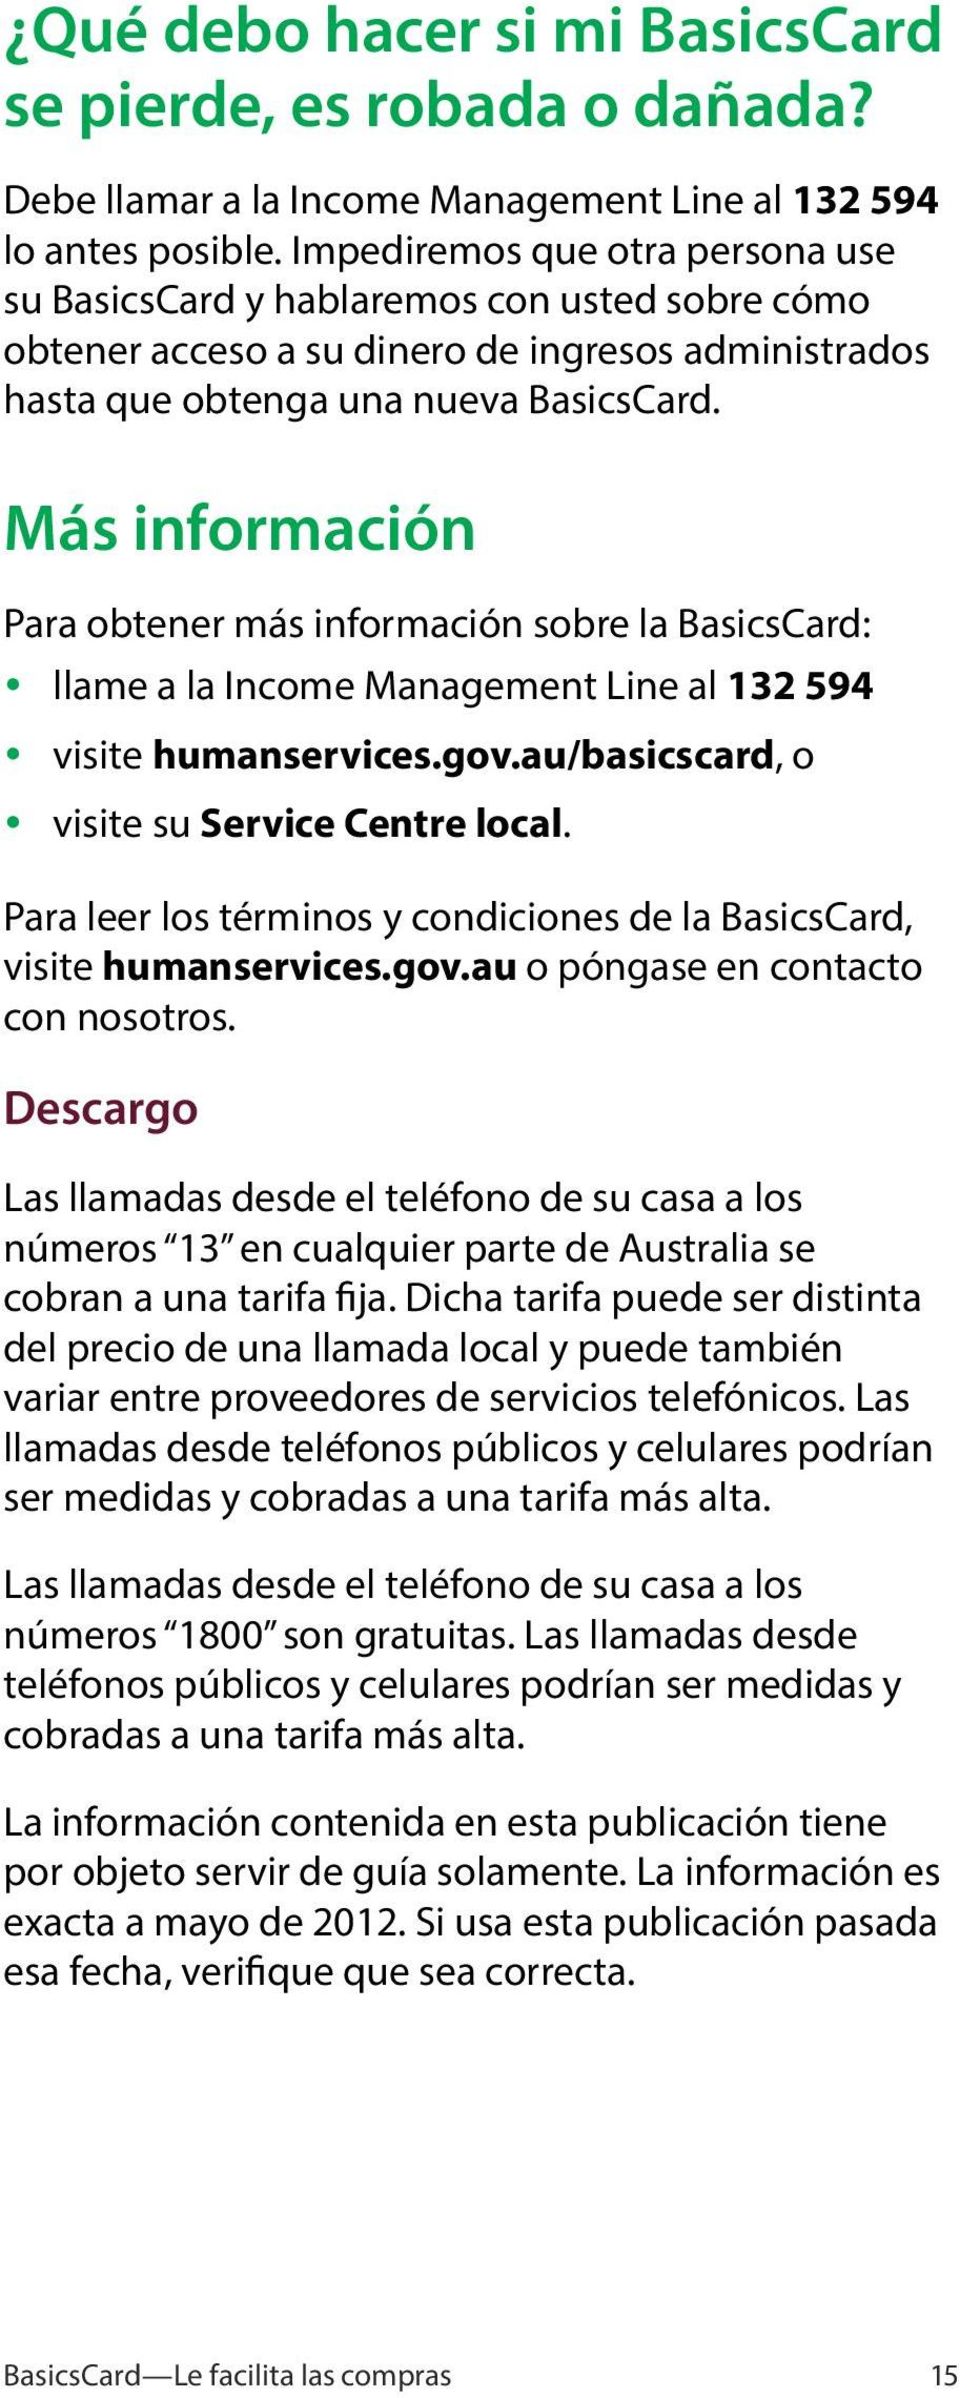 Más información Para obtener más información sobre la BasicsCard: y llame a la Income Management Line al 132 594 y visite humanservices.gov.au/basicscard, o y visite su Service Centre local.